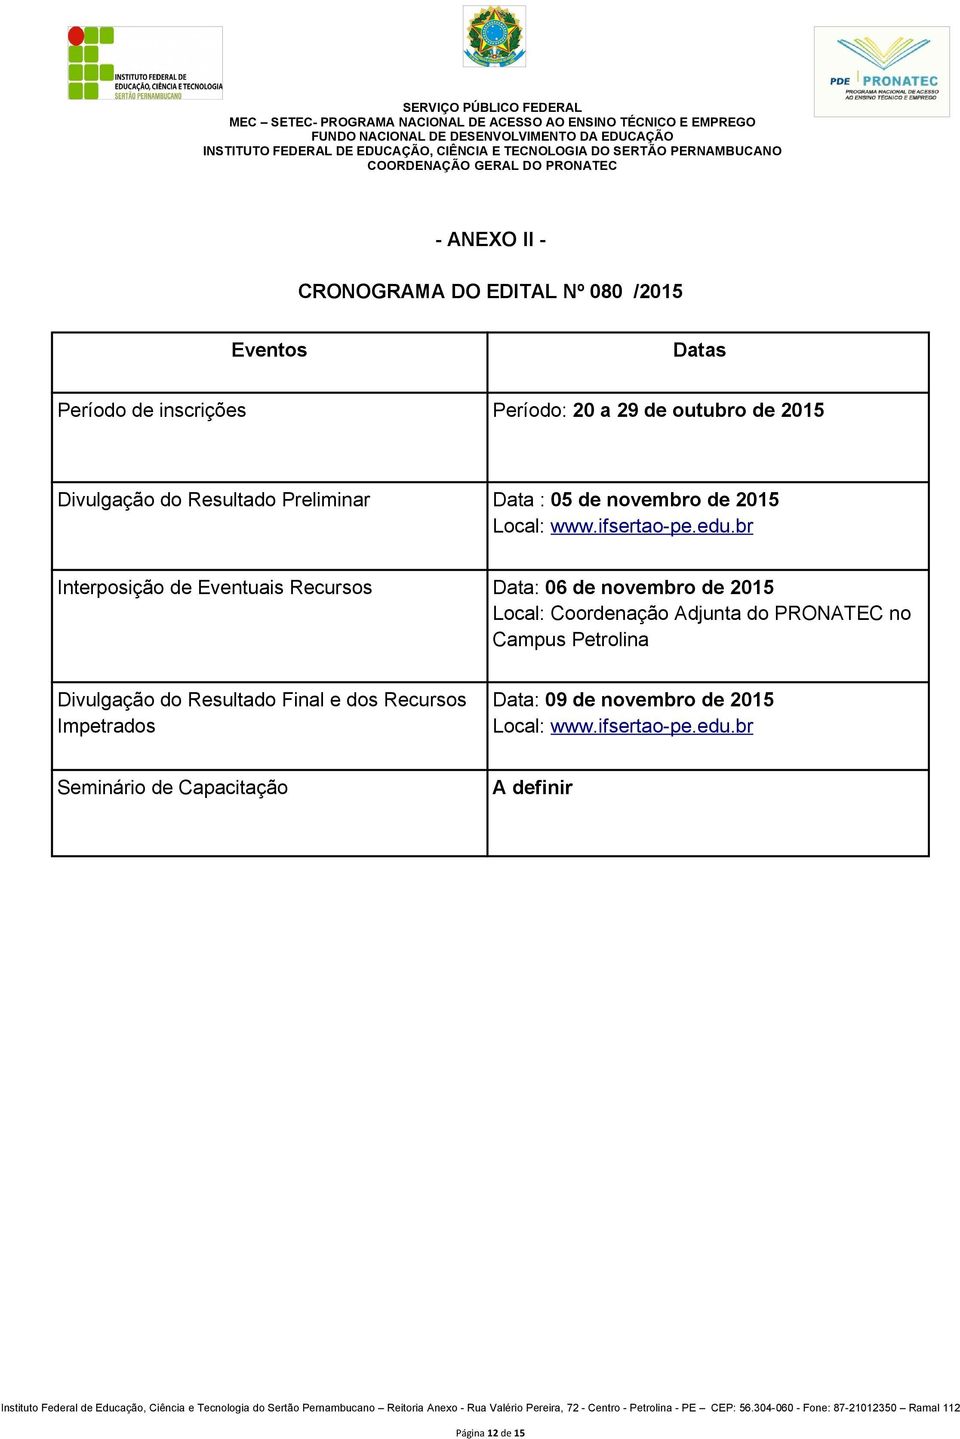 br Interposição de Eventuais Recursos Data: 06 de novembro de 2015 Local: Coordenação Adjunta do PRONATEC no Campus Petrolina